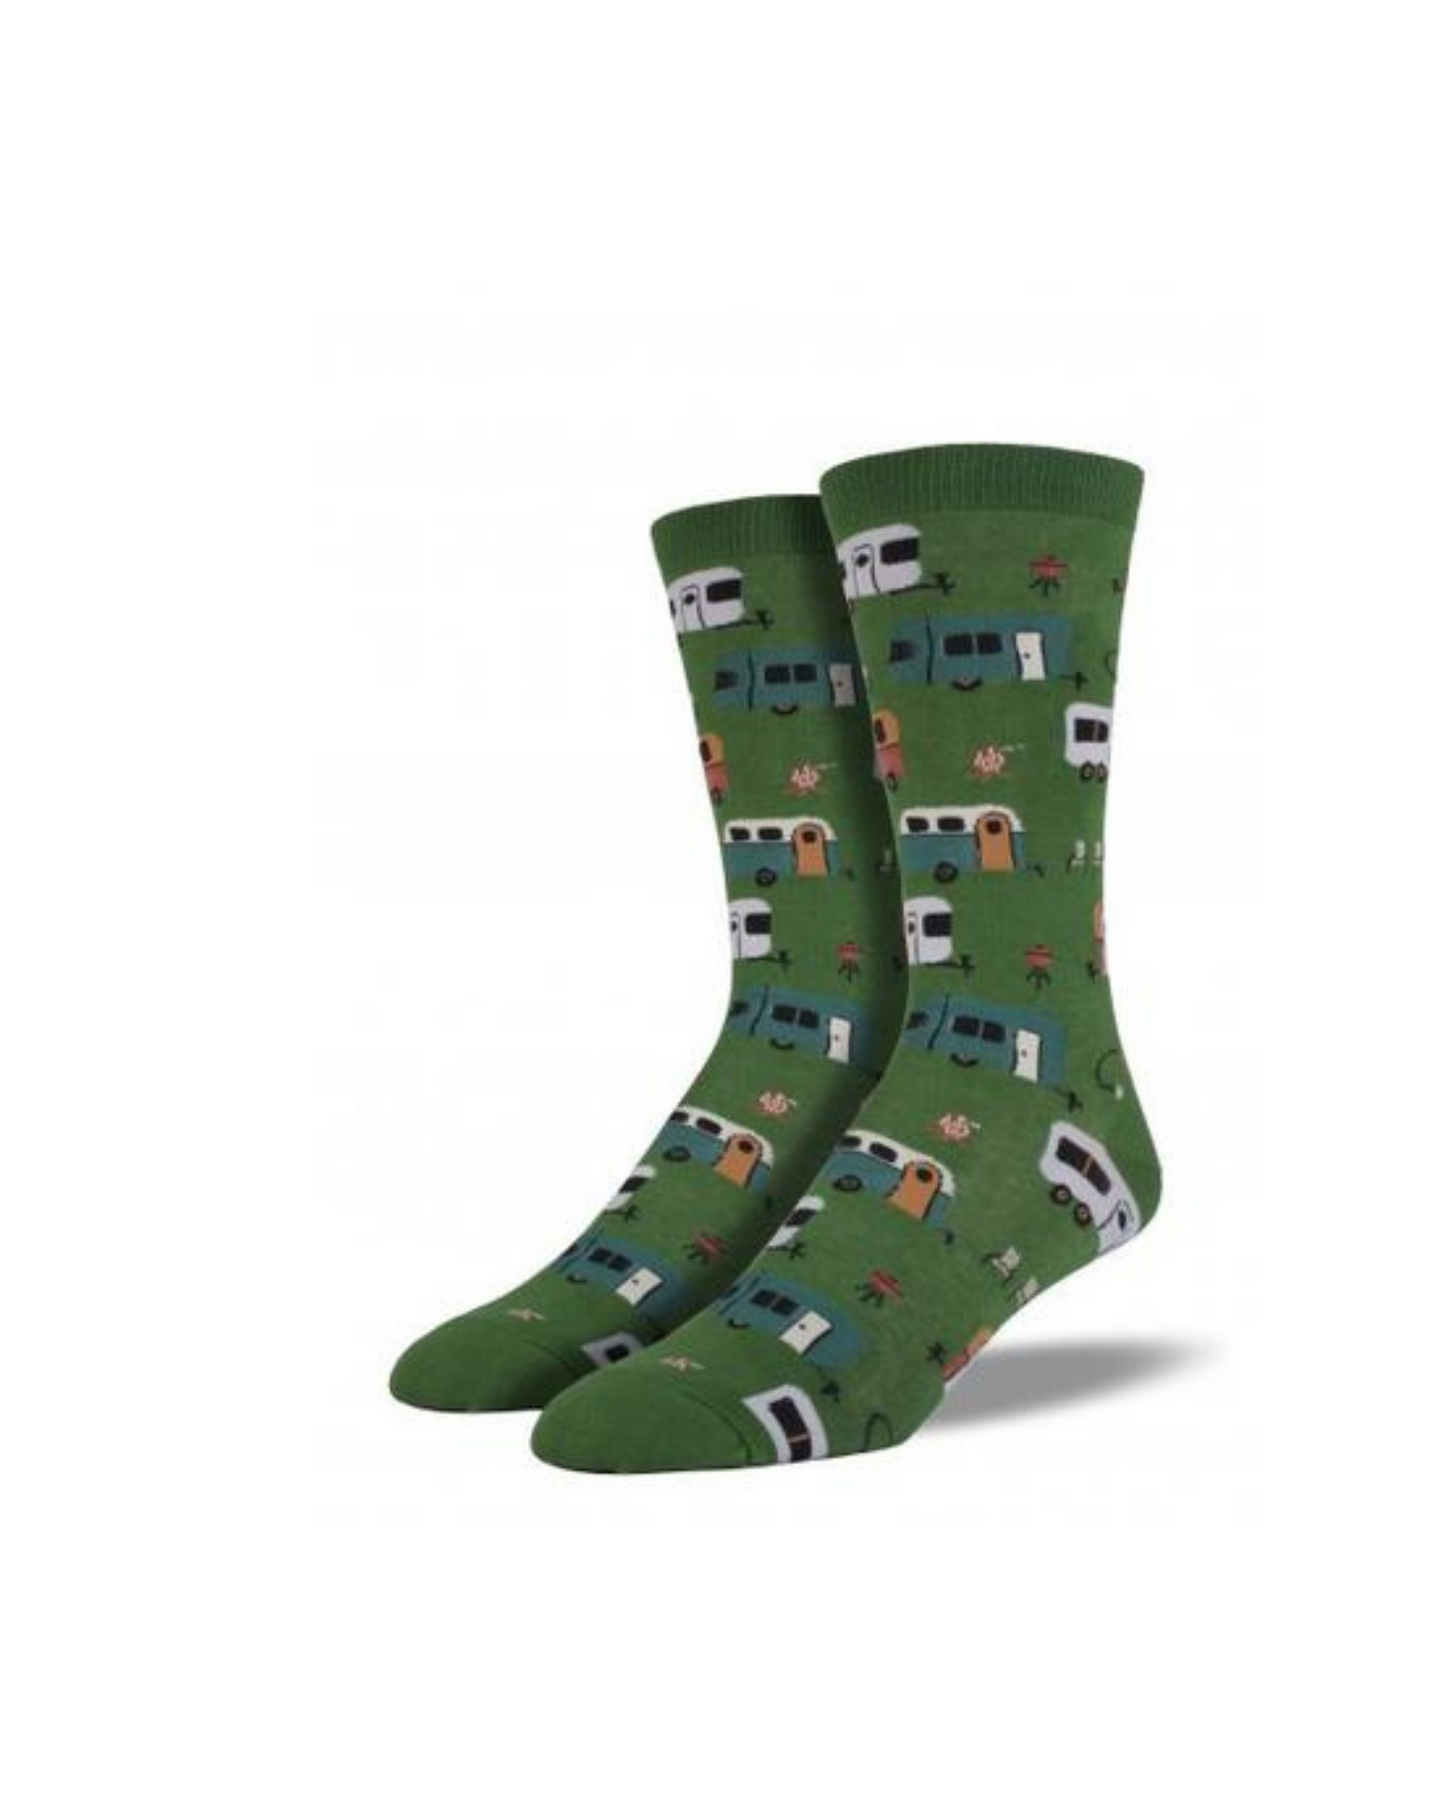 Socksmith Camptown Socks - Parrot Green - 11_b2cf71f8-a79f-4d75-8758-8aa6f1b5ad9b